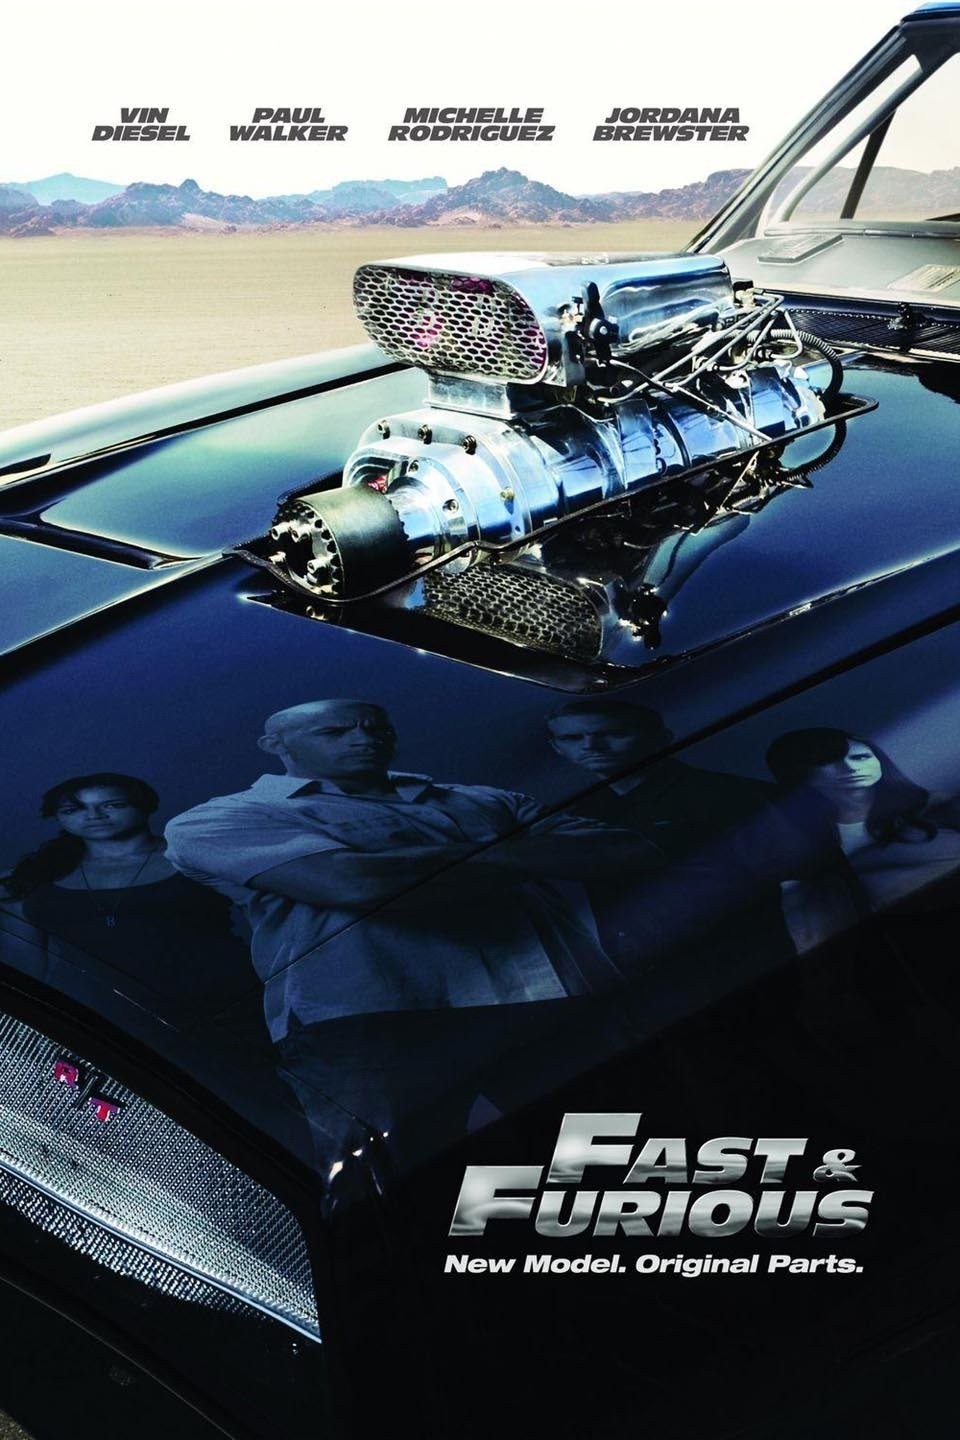 Velocidade Furiosa 7 - James Wan - Vin Diesel - Paul Walker - DVD